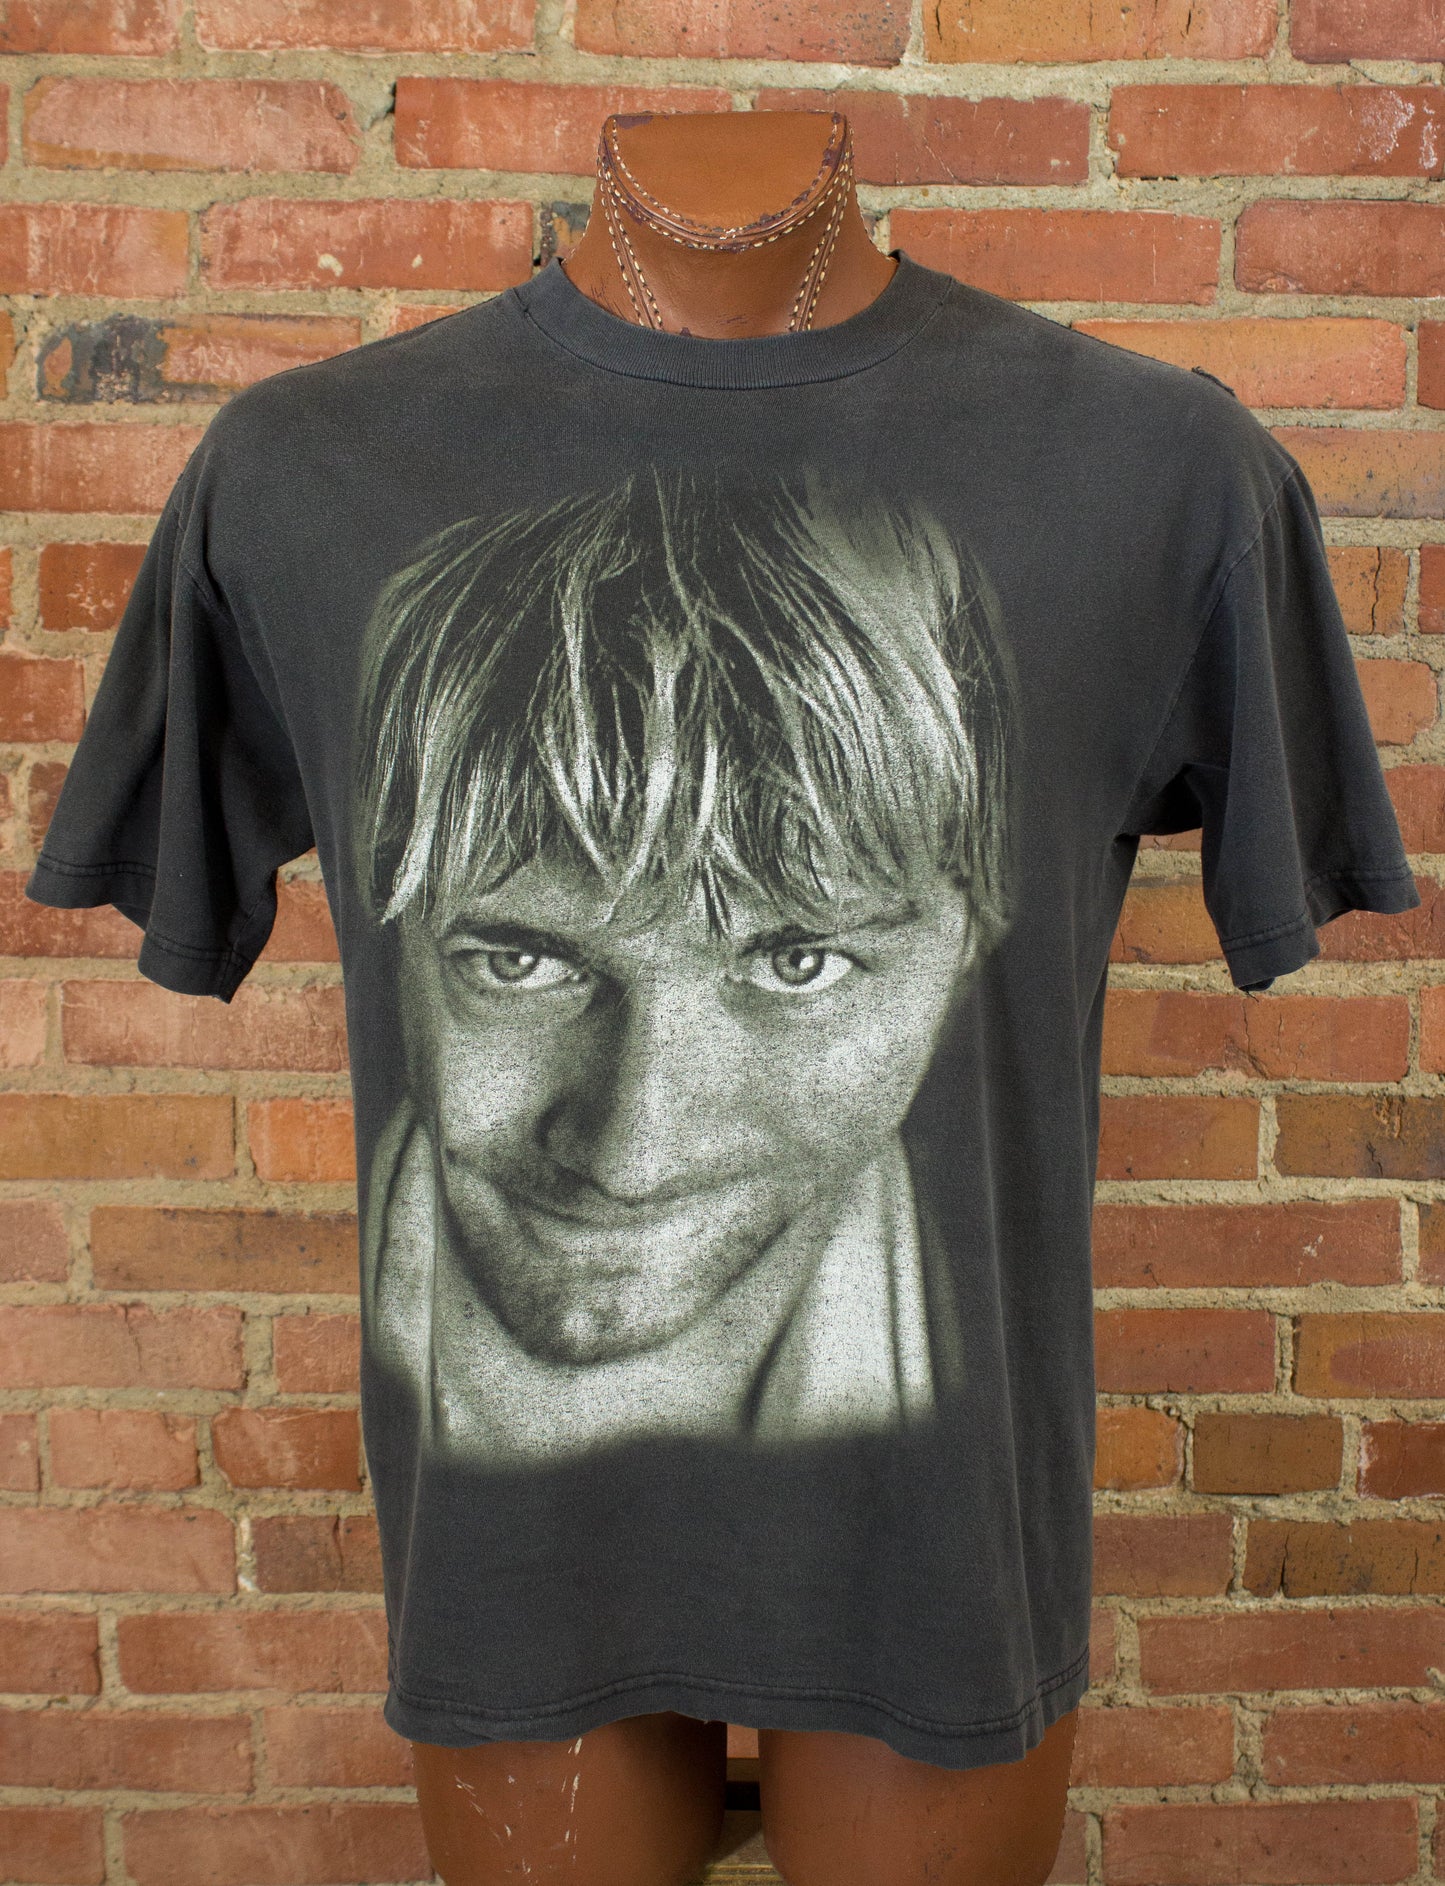 Vintage Kurt Cobain Concert T Shirt 1998 Portrait Signature Faded Black and White Large-XL